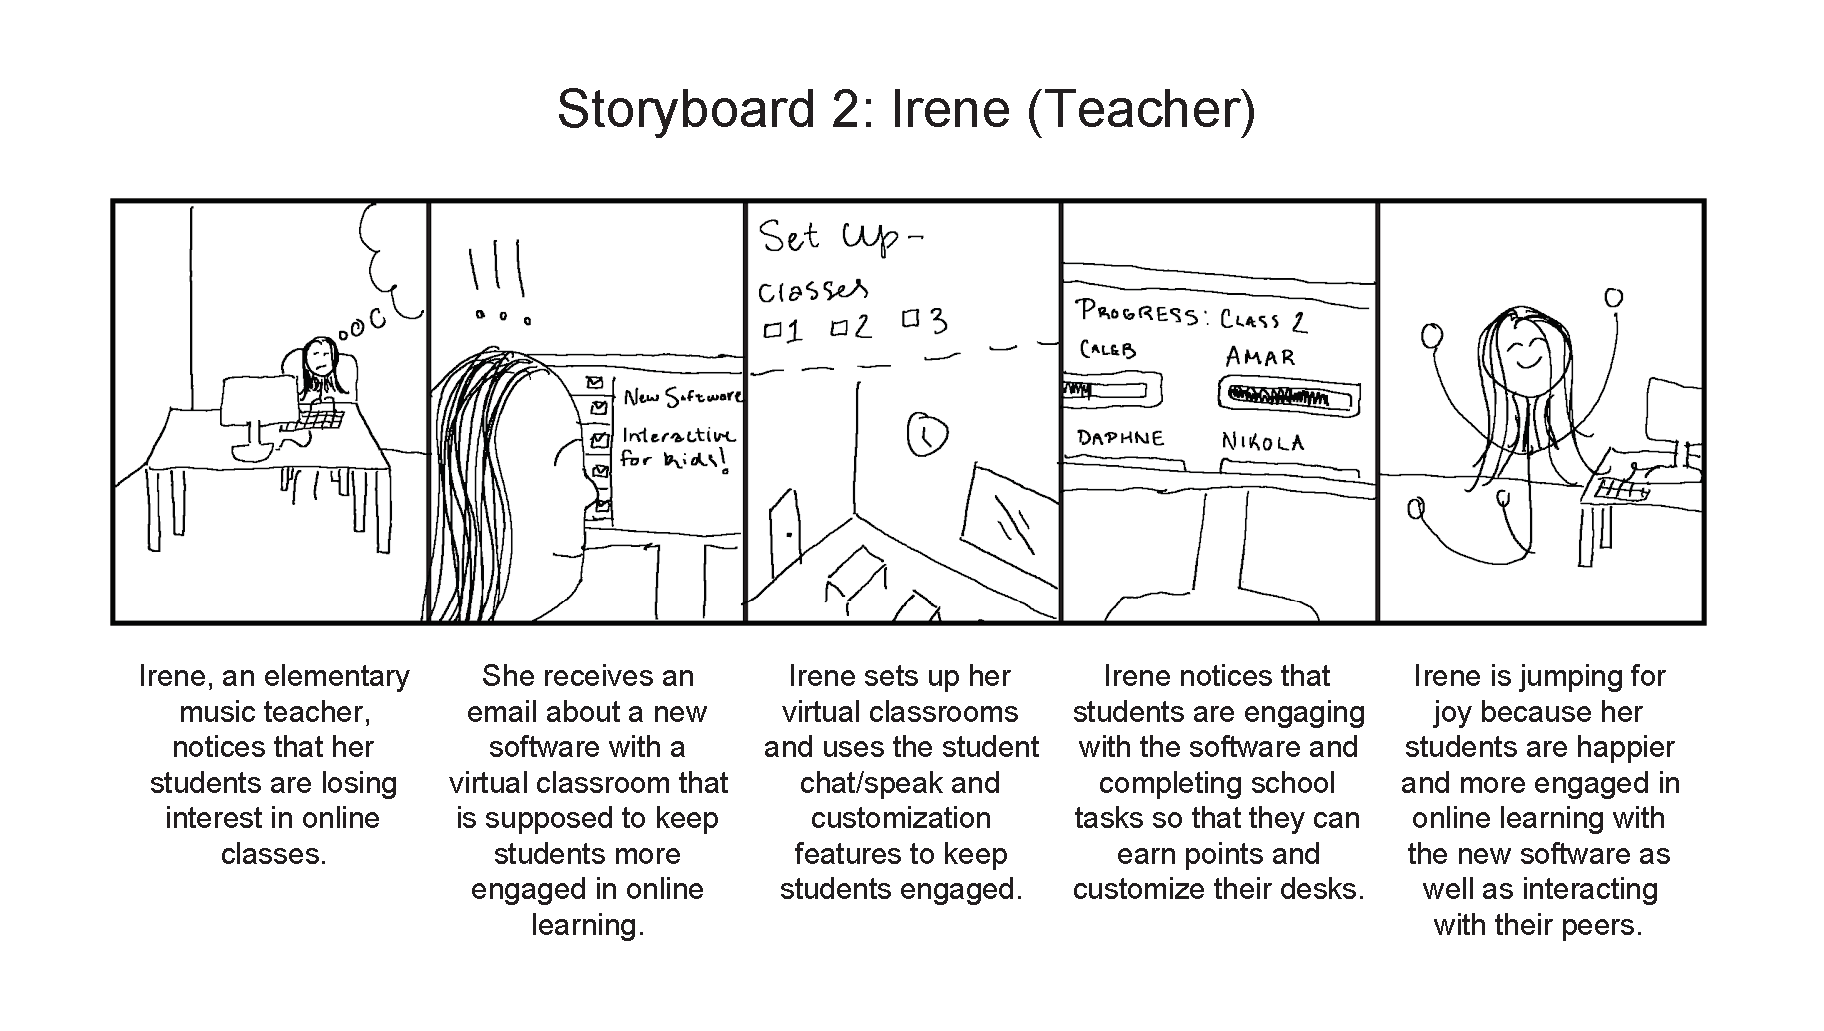 Storyboard describing a teacher's interaction